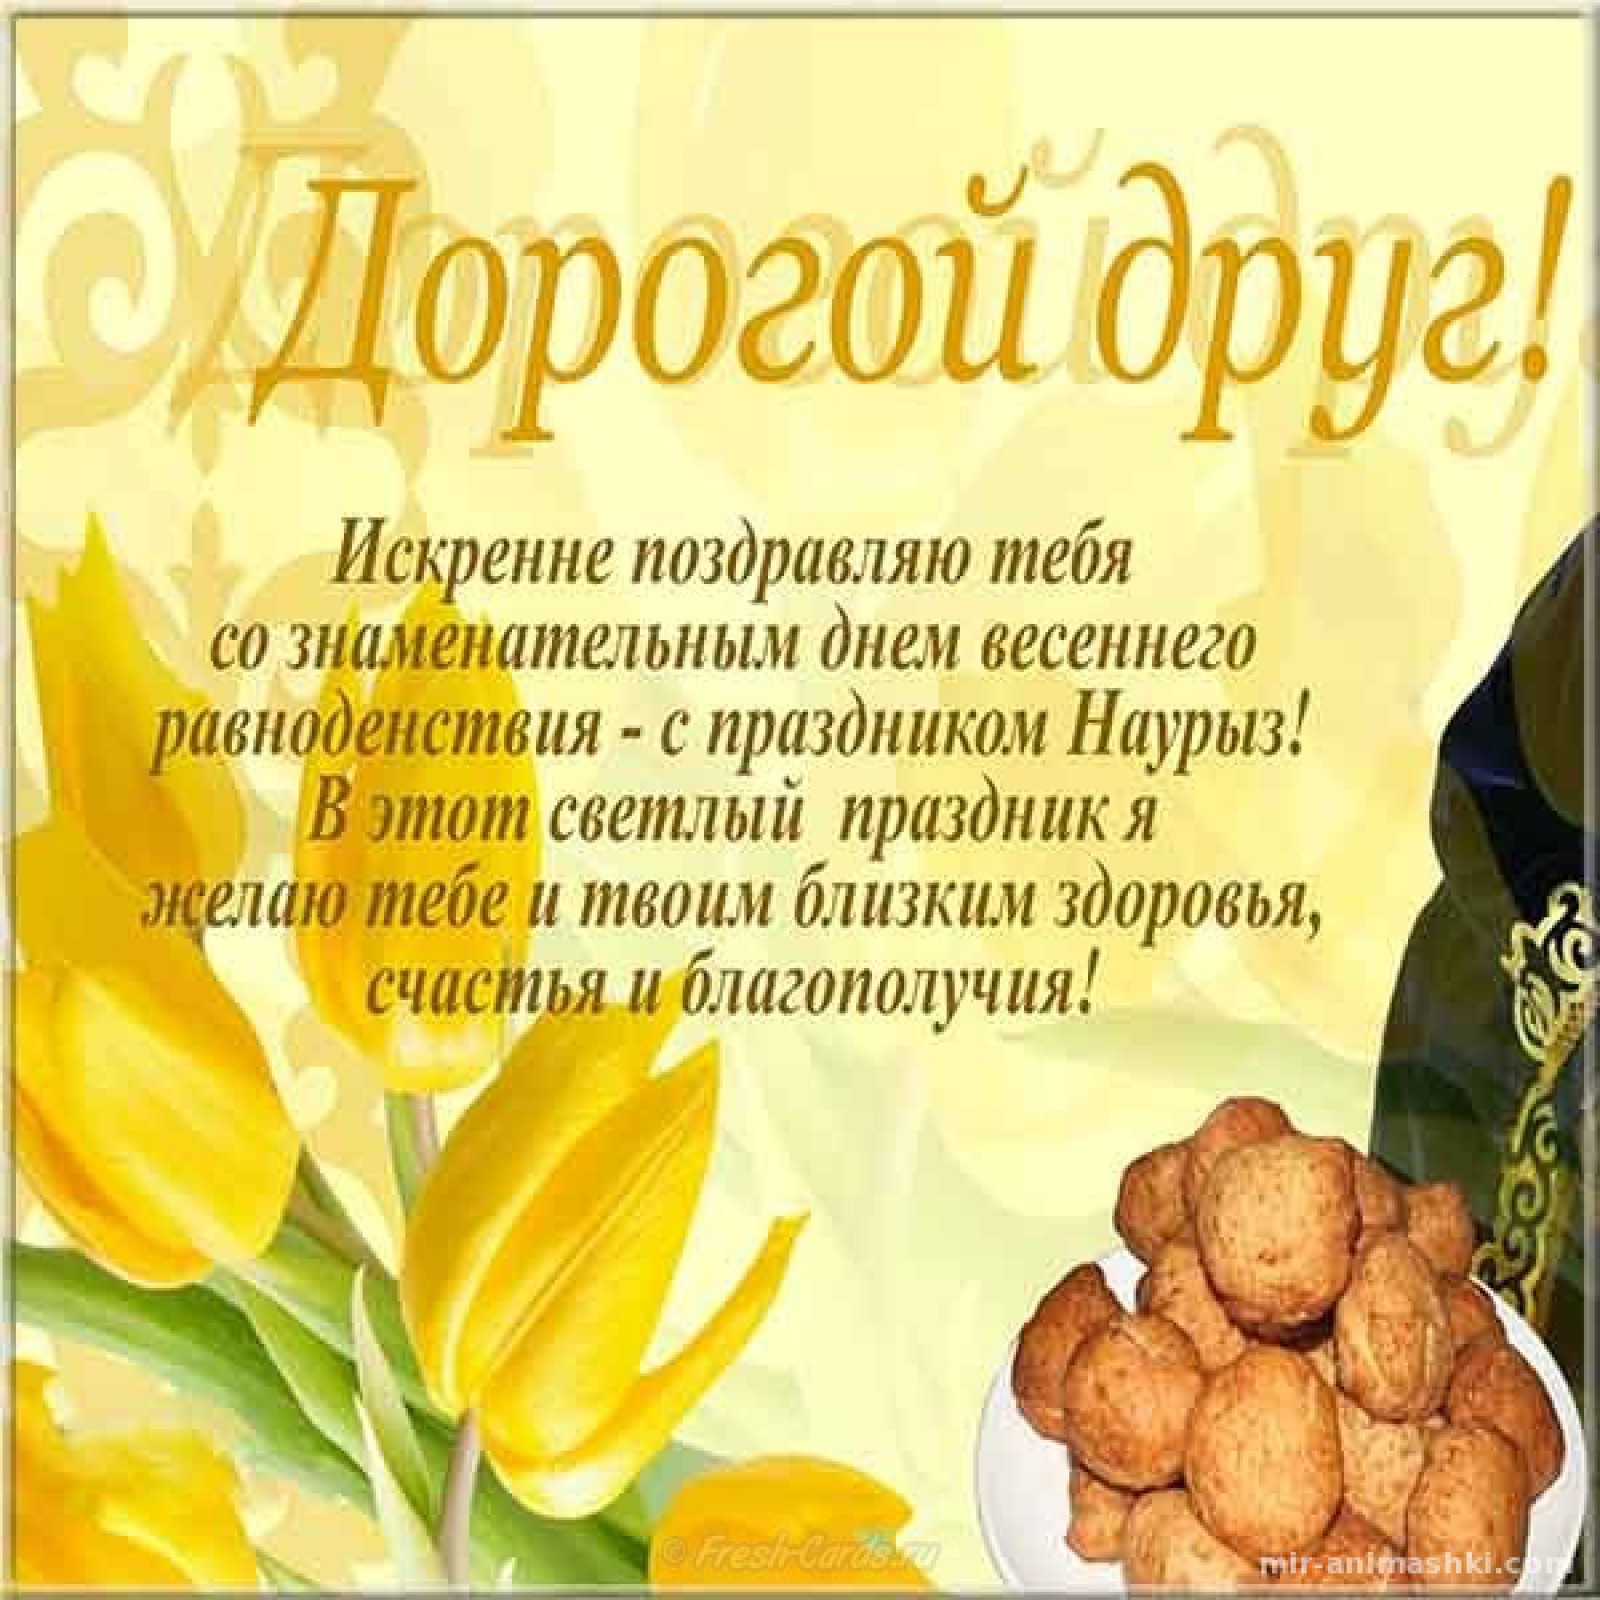 Поздравления с праздником Наурыз, Навруз и Новруз байрам